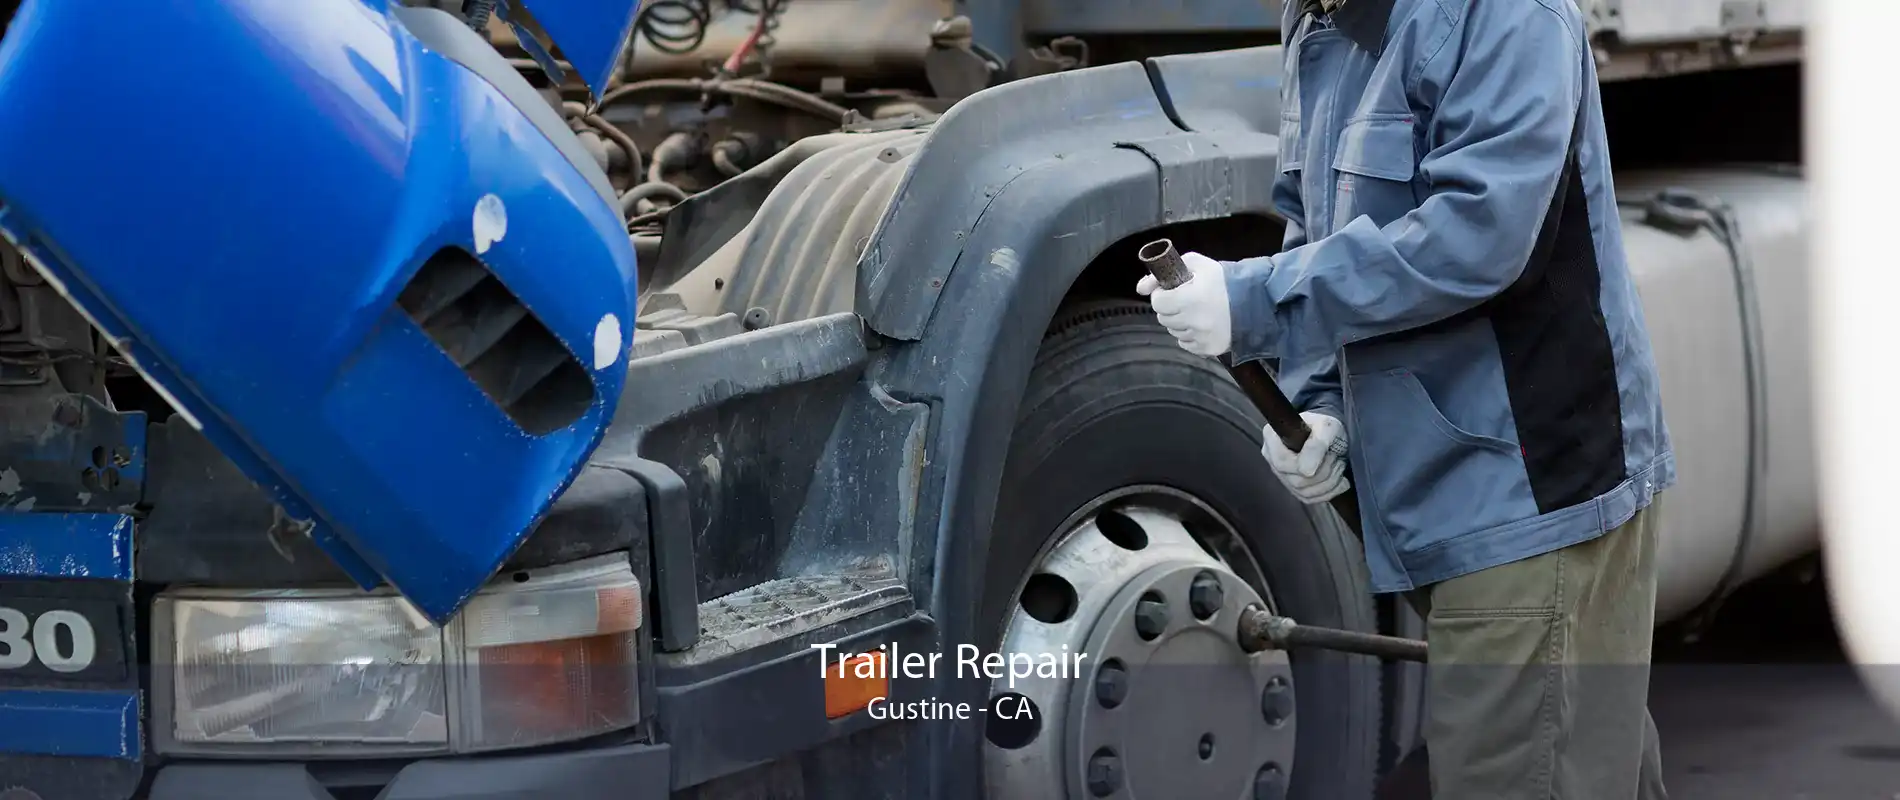 Trailer Repair Gustine - CA